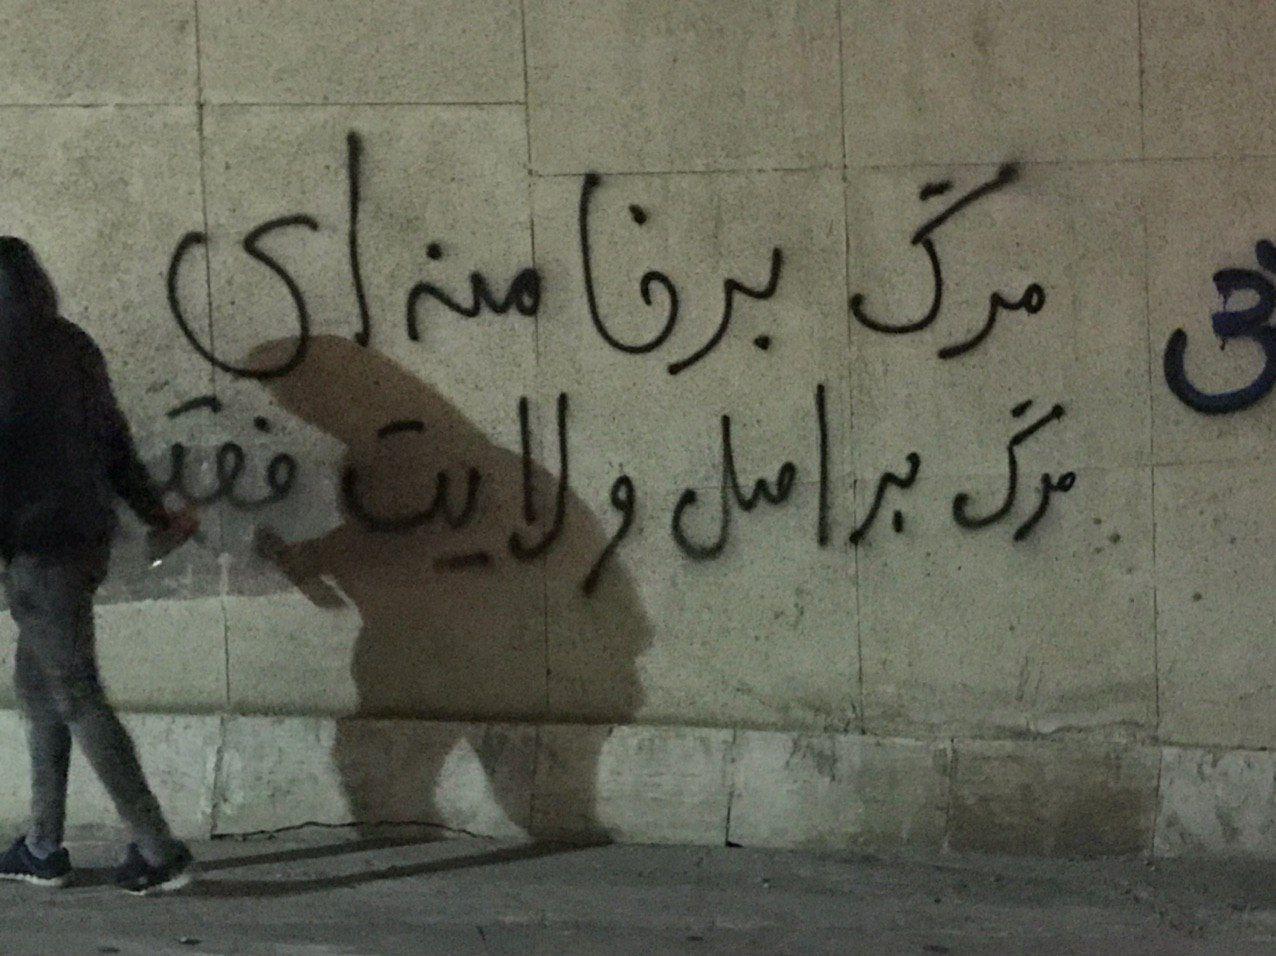 تداوم خیزش سراسری با شعارهای شبانه در تهران و کرج